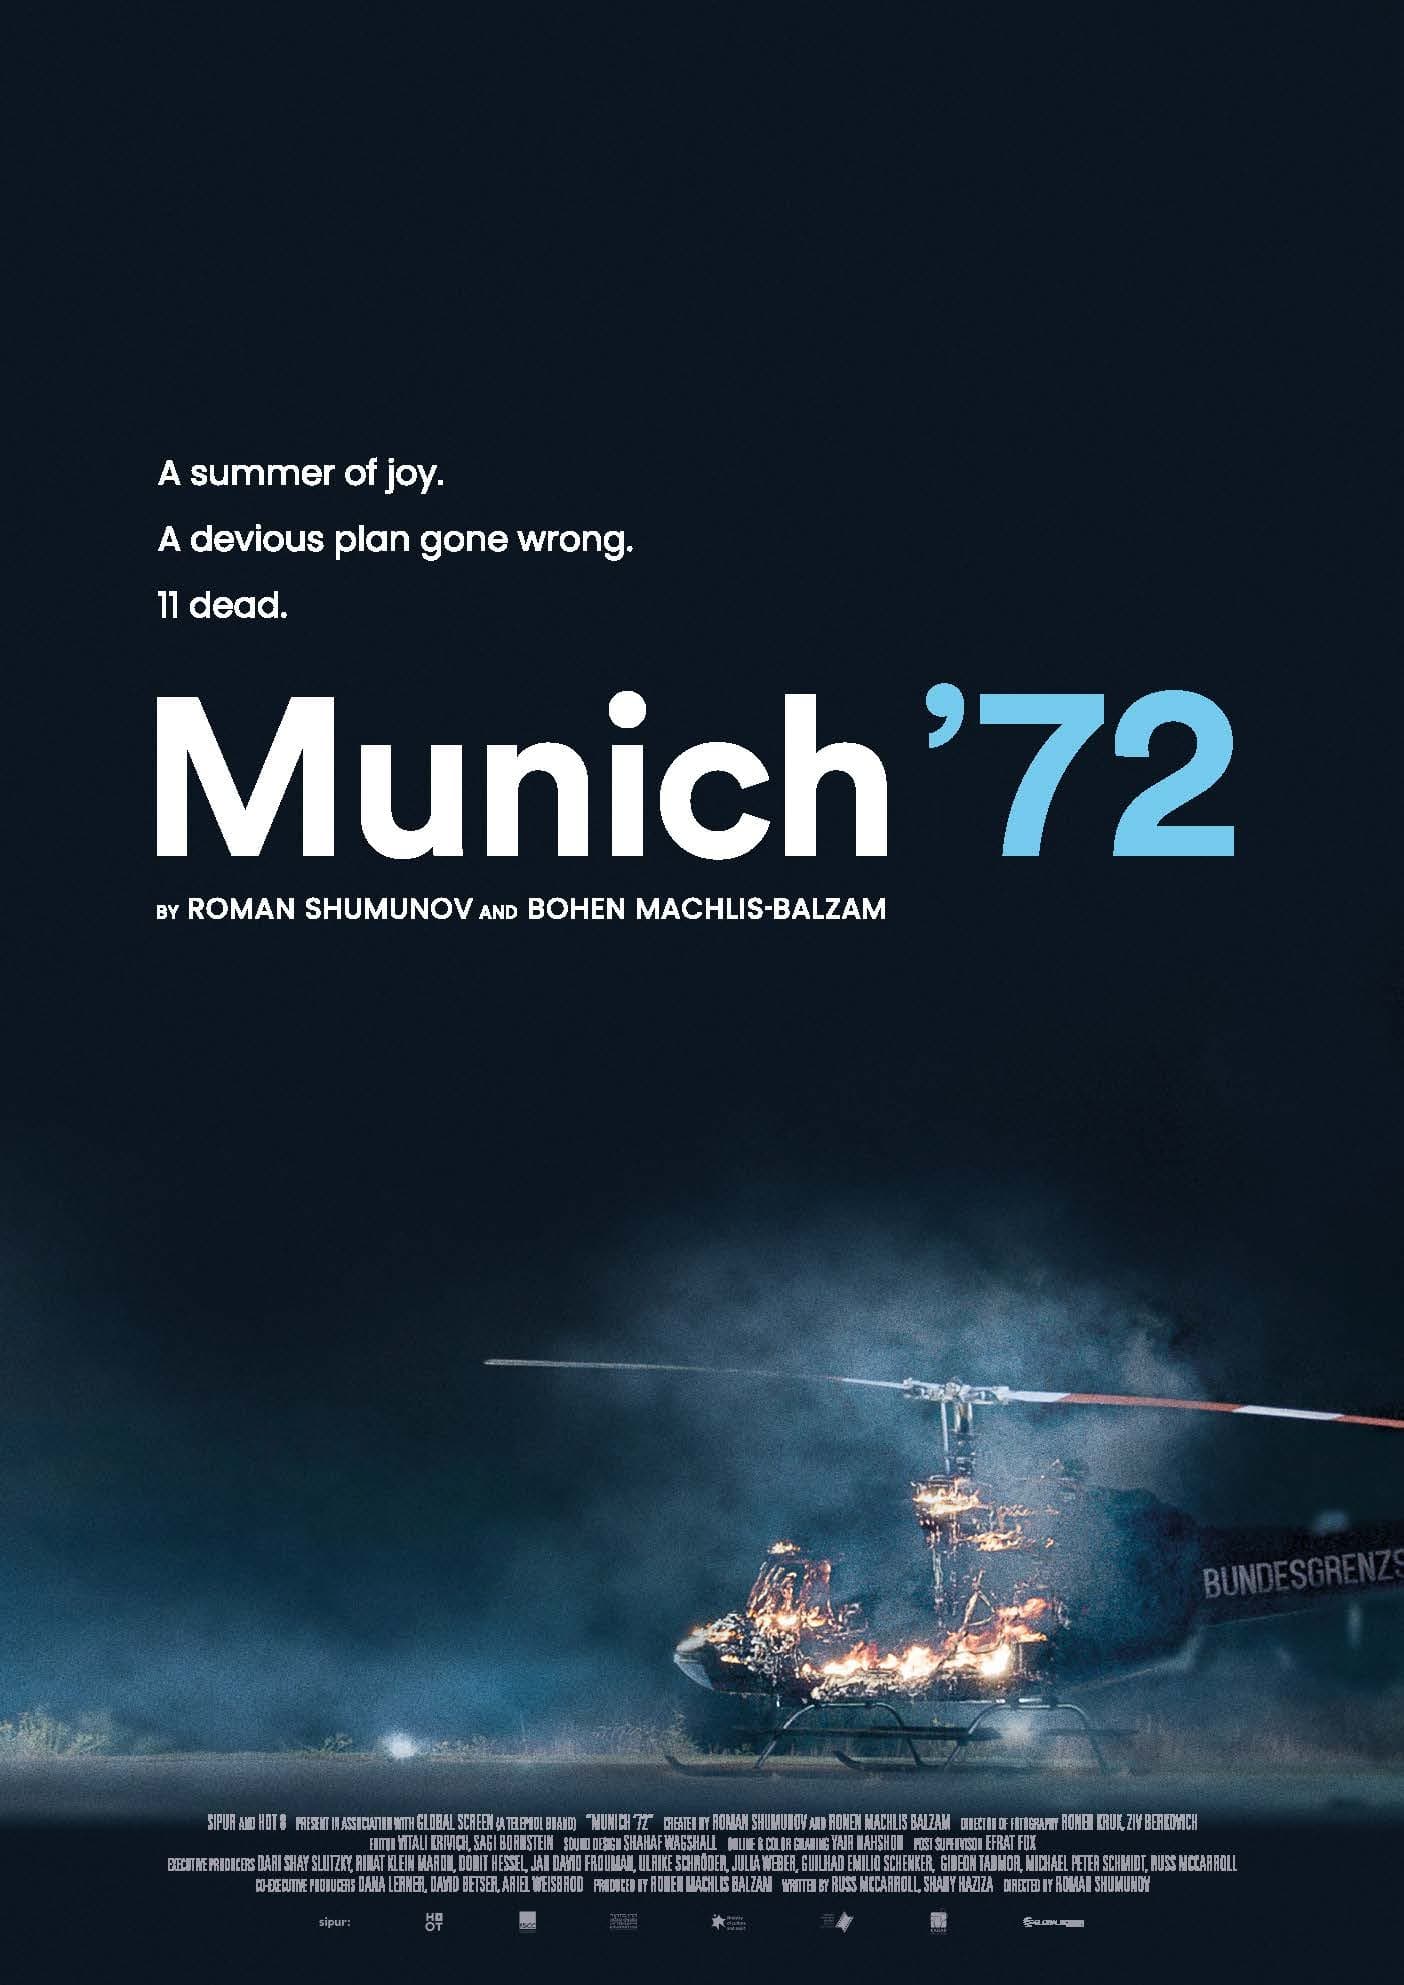 Munich 72, des jeux et du sang